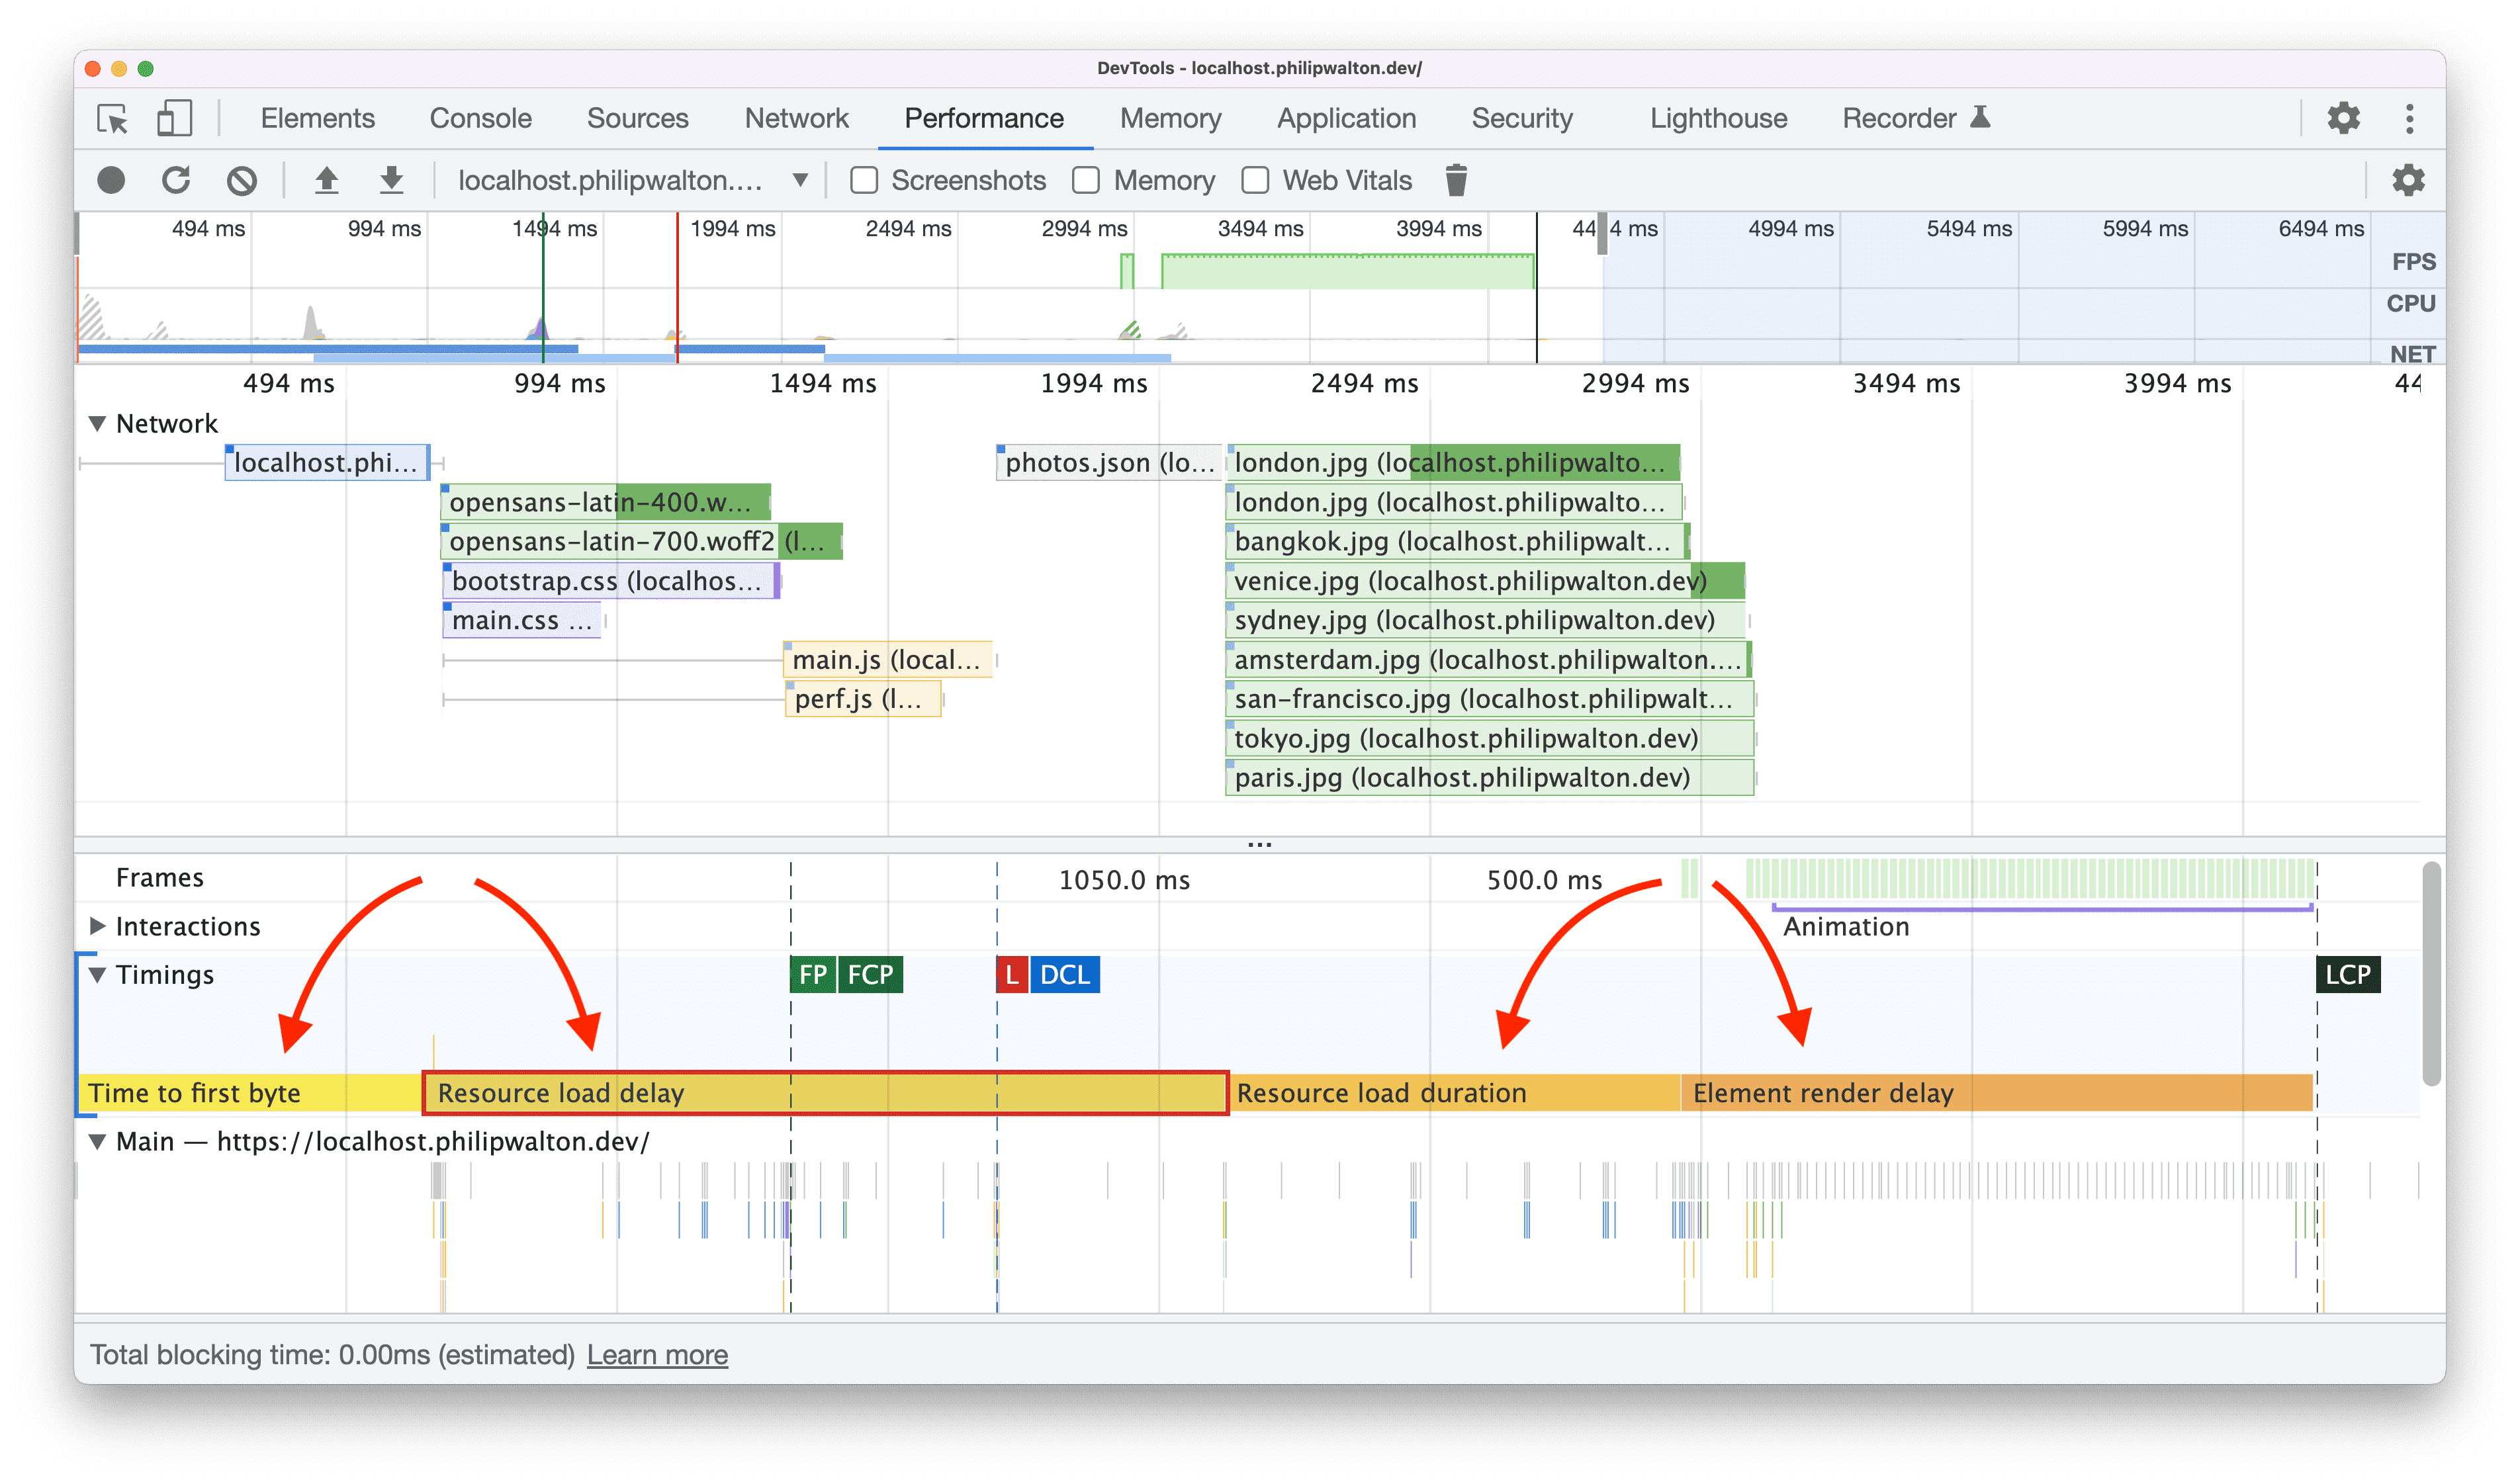 Chrome DevTools में दिखाए गए एलसीपी सब-कैटगरी के लिए, उपयोगकर्ता समय से जुड़े डेटा को मेज़र करने की सुविधा